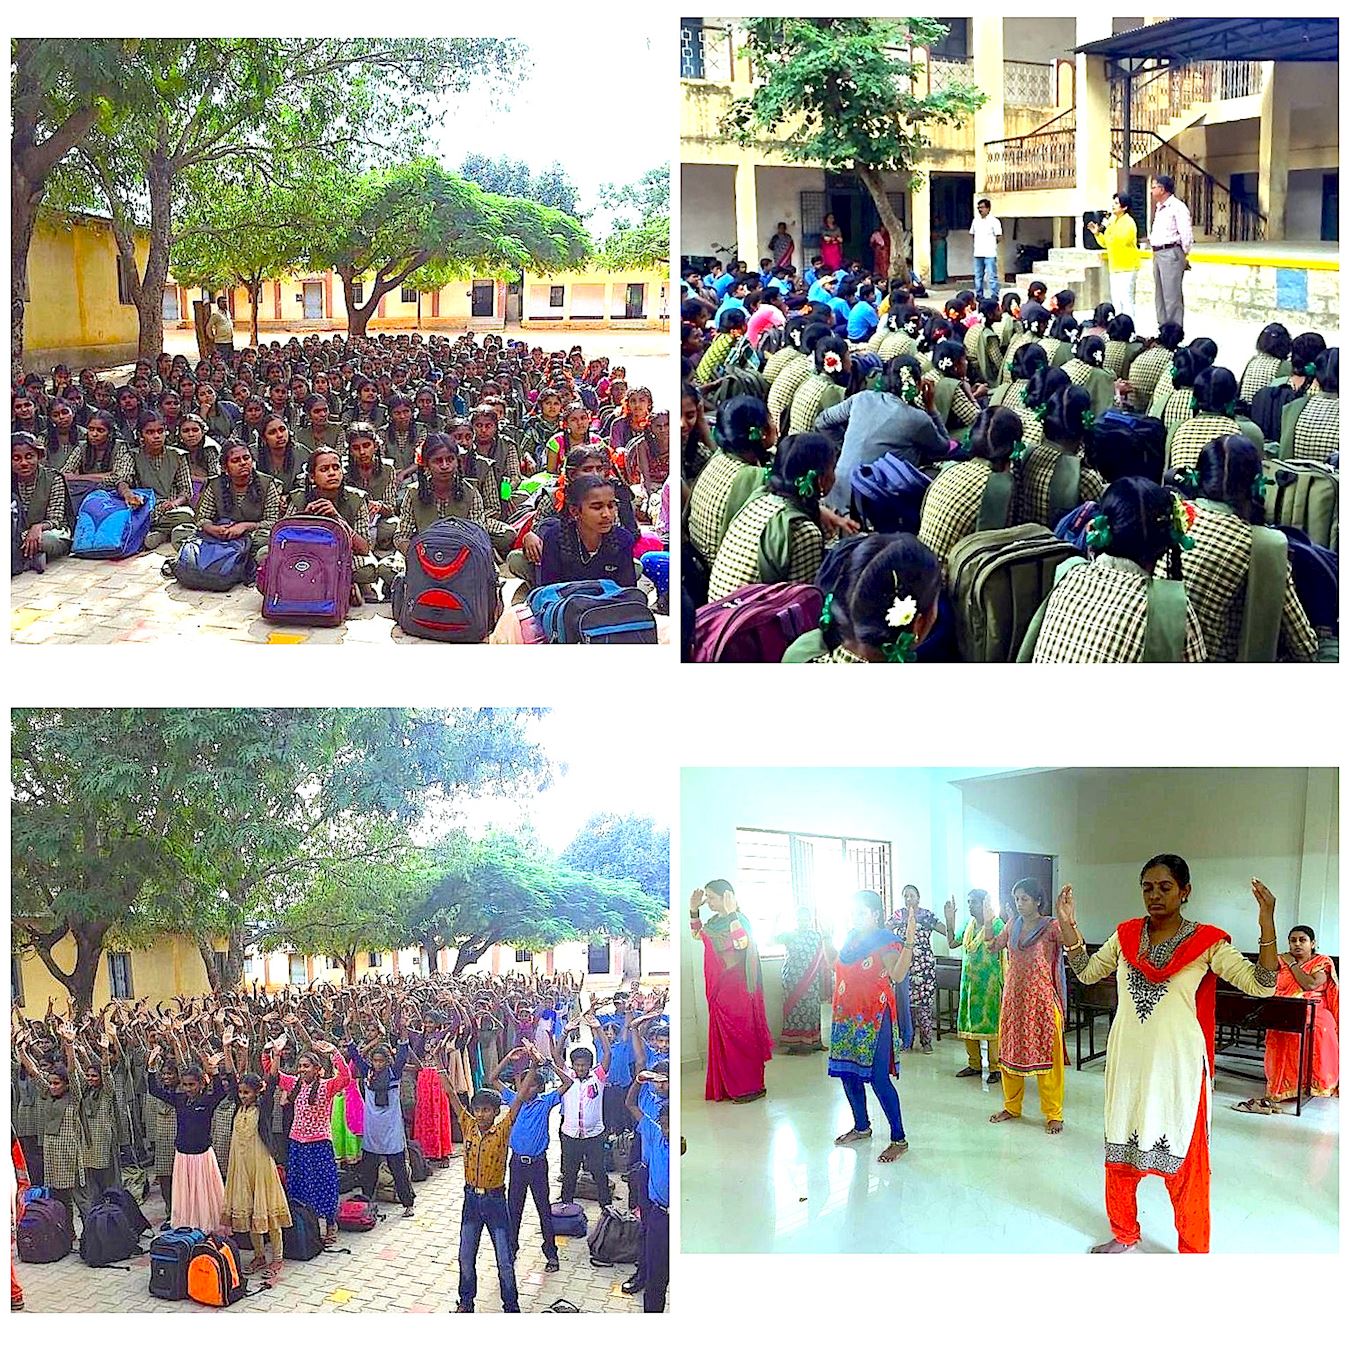 Image for article Inde : Présentations du Falun Dafa bien accueillies dans les écoles de Bangalore